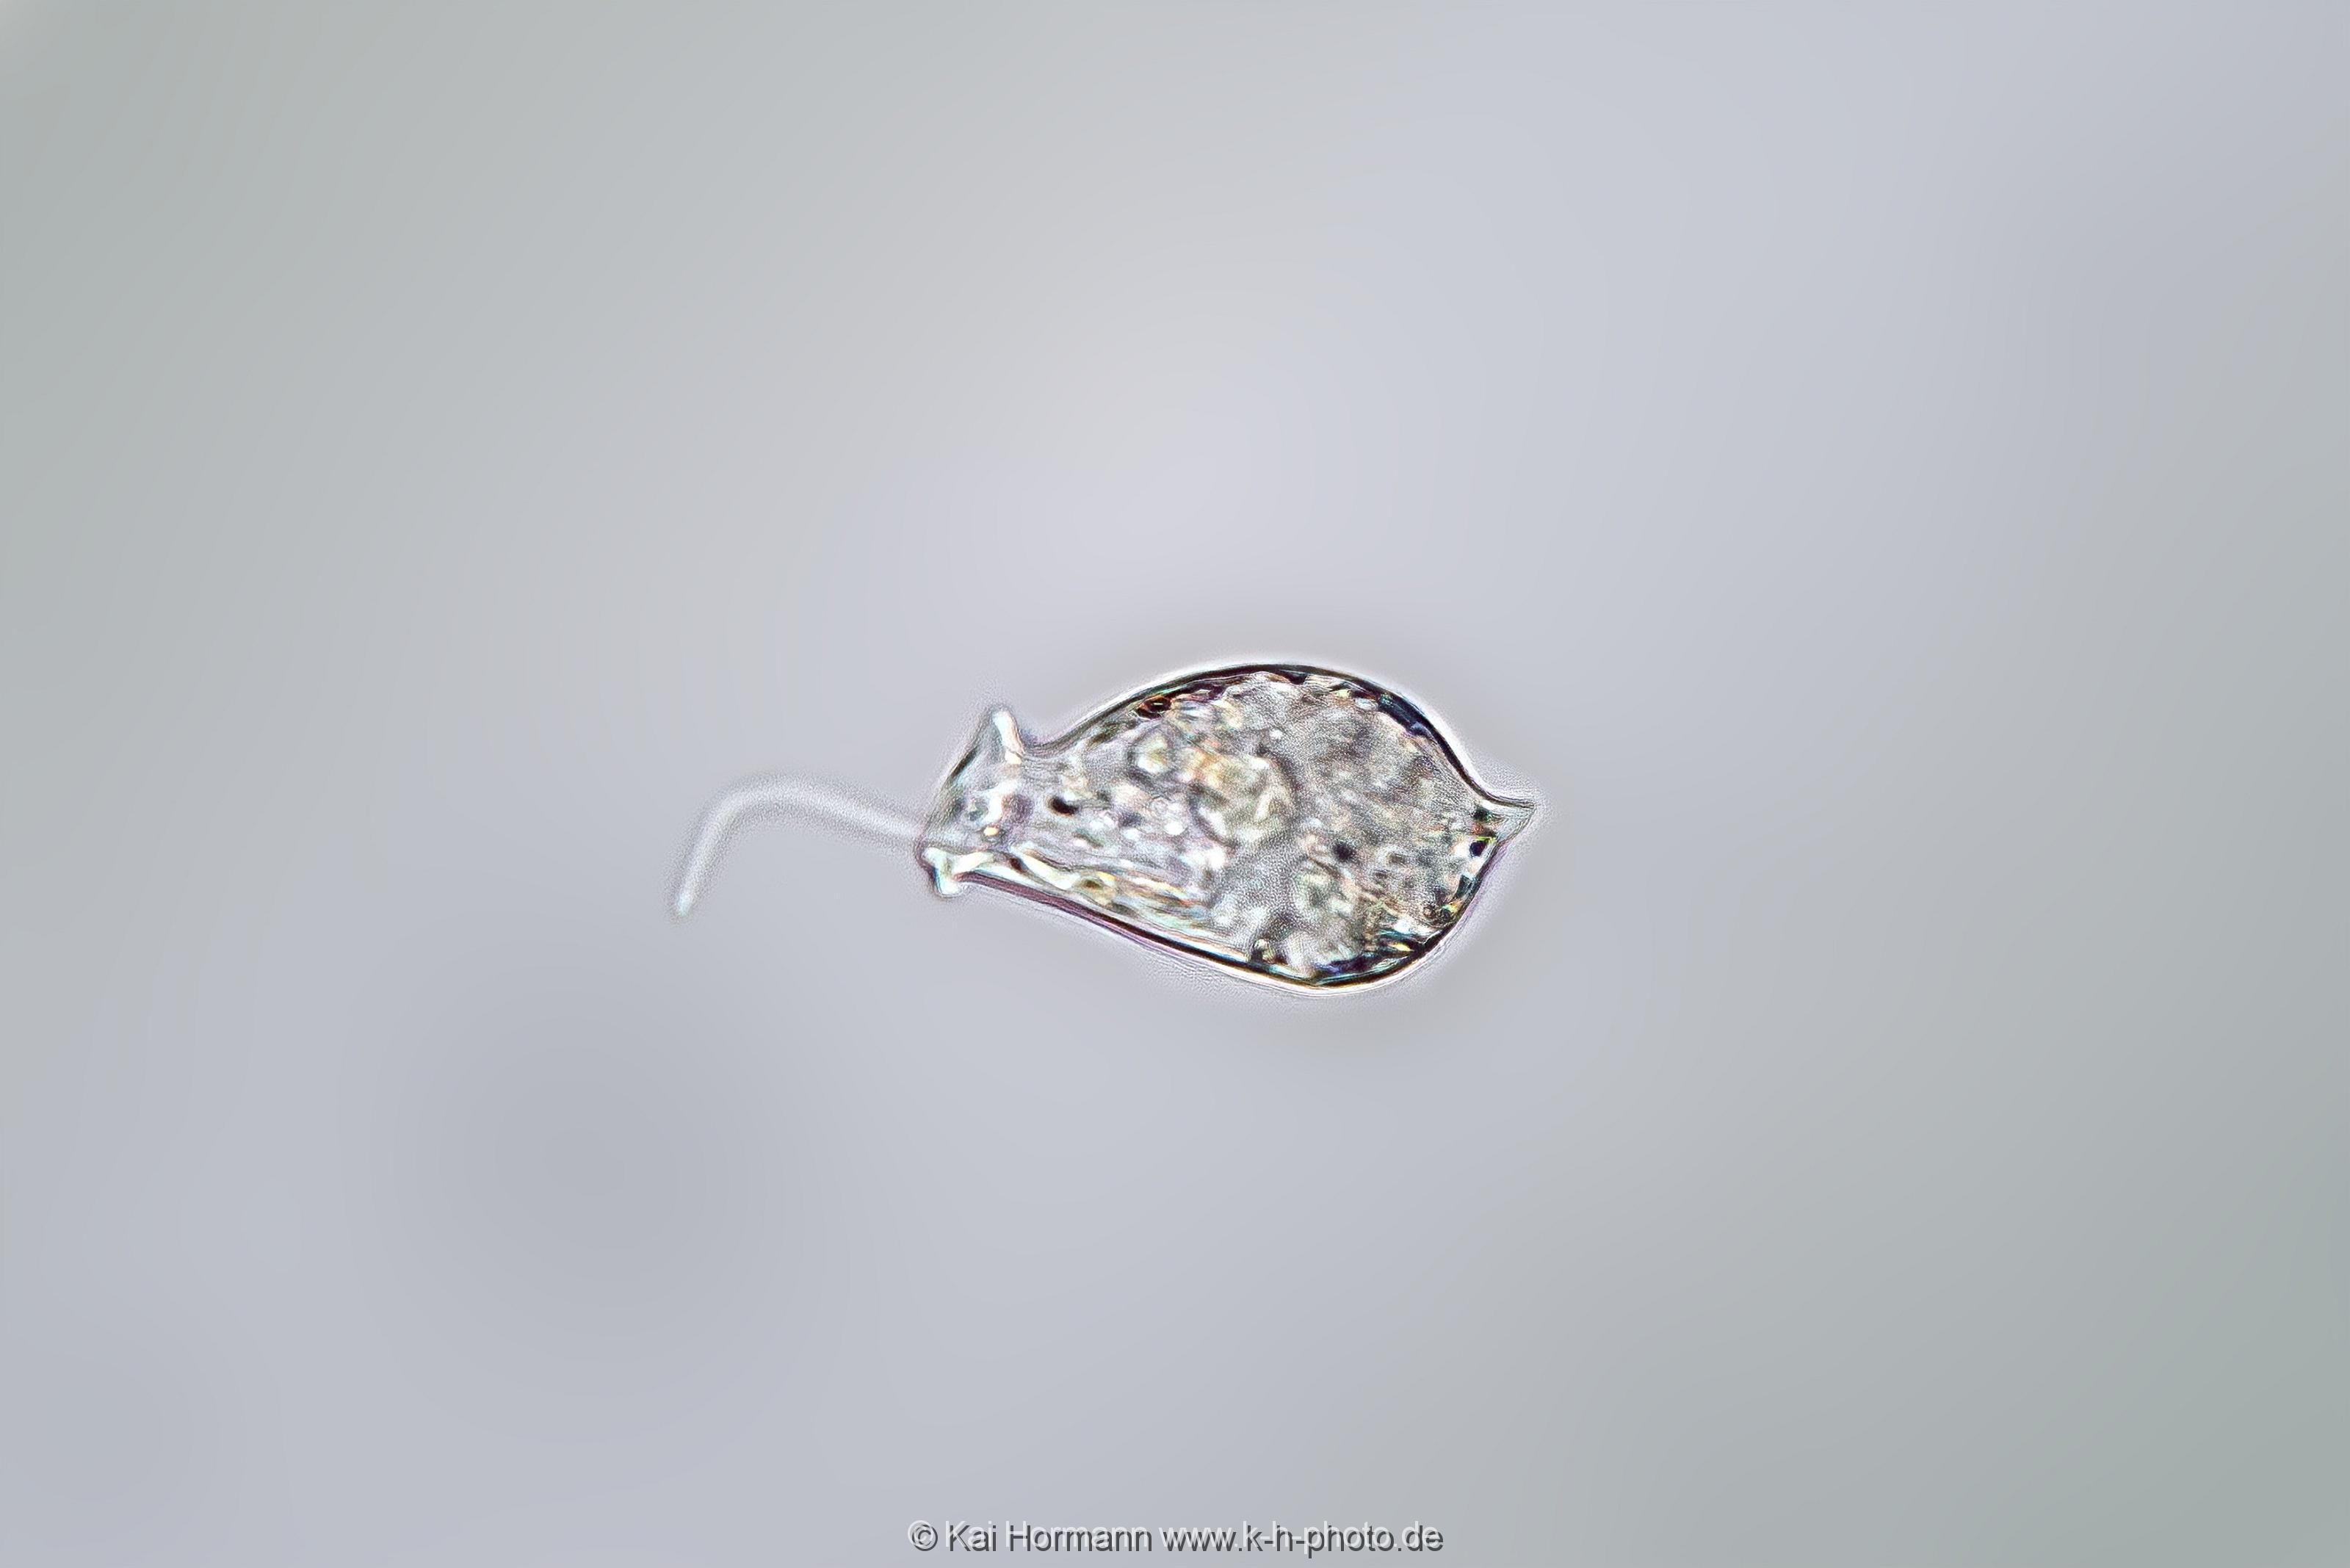 Geißeltierchen. Mikrofotografie: Mikroskopische Aufnahmen von Einzellern, Algen und Kleinstlebewesen.